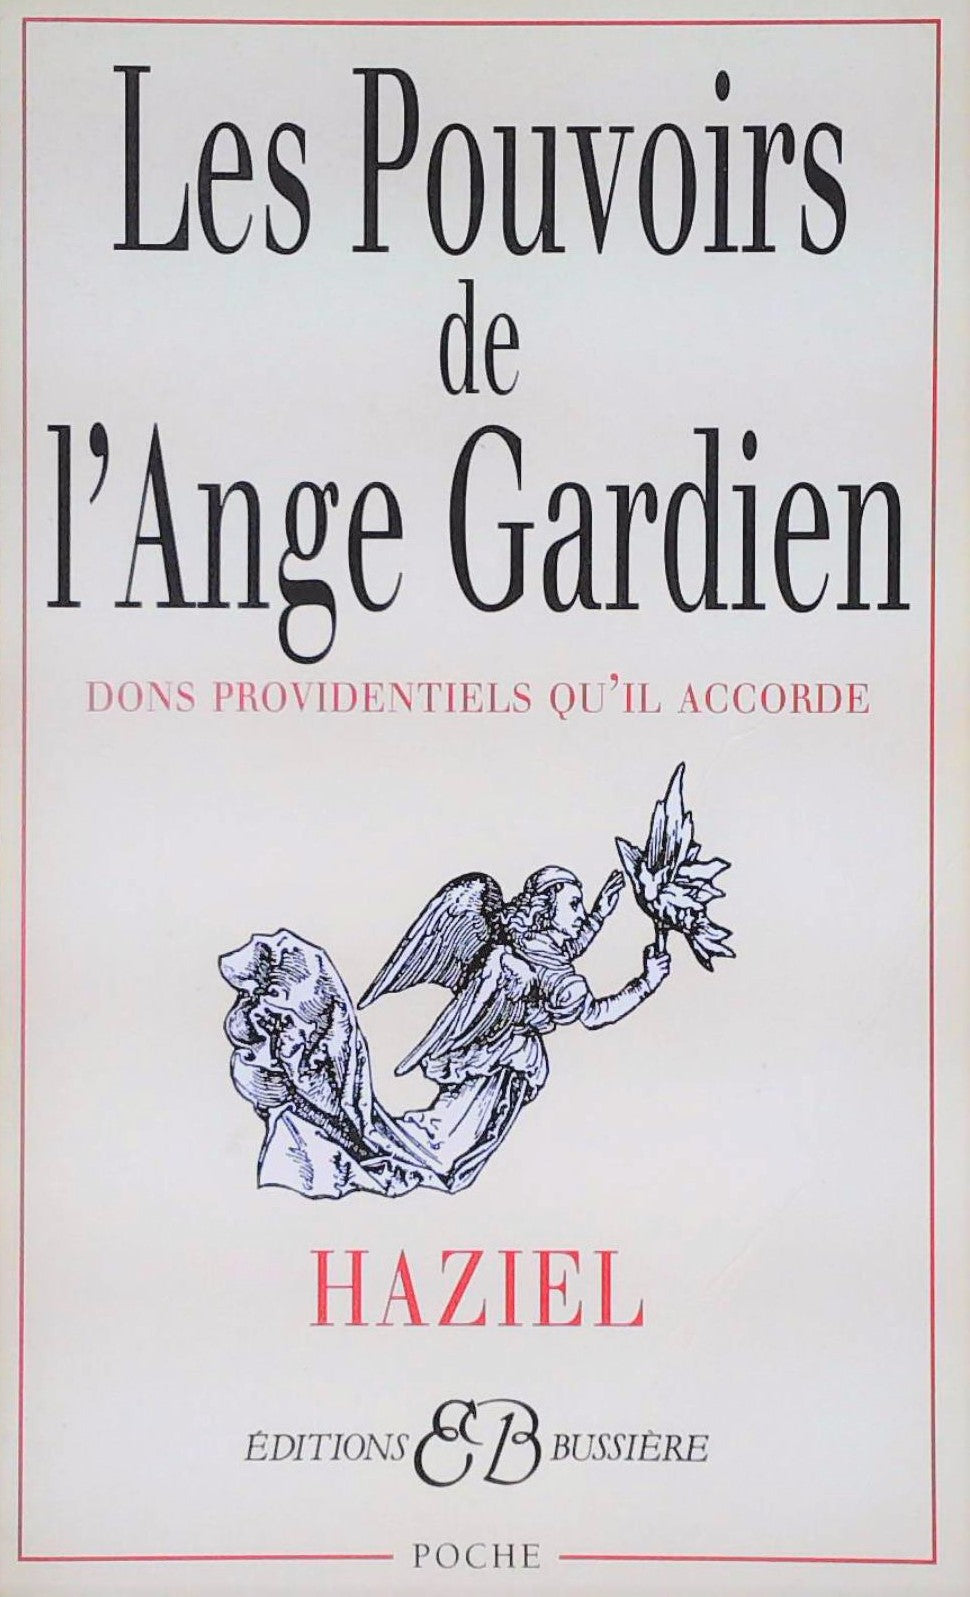 Livre ISBN 2850901563 Les pouvoirs de l'ange gardien (Haziel)